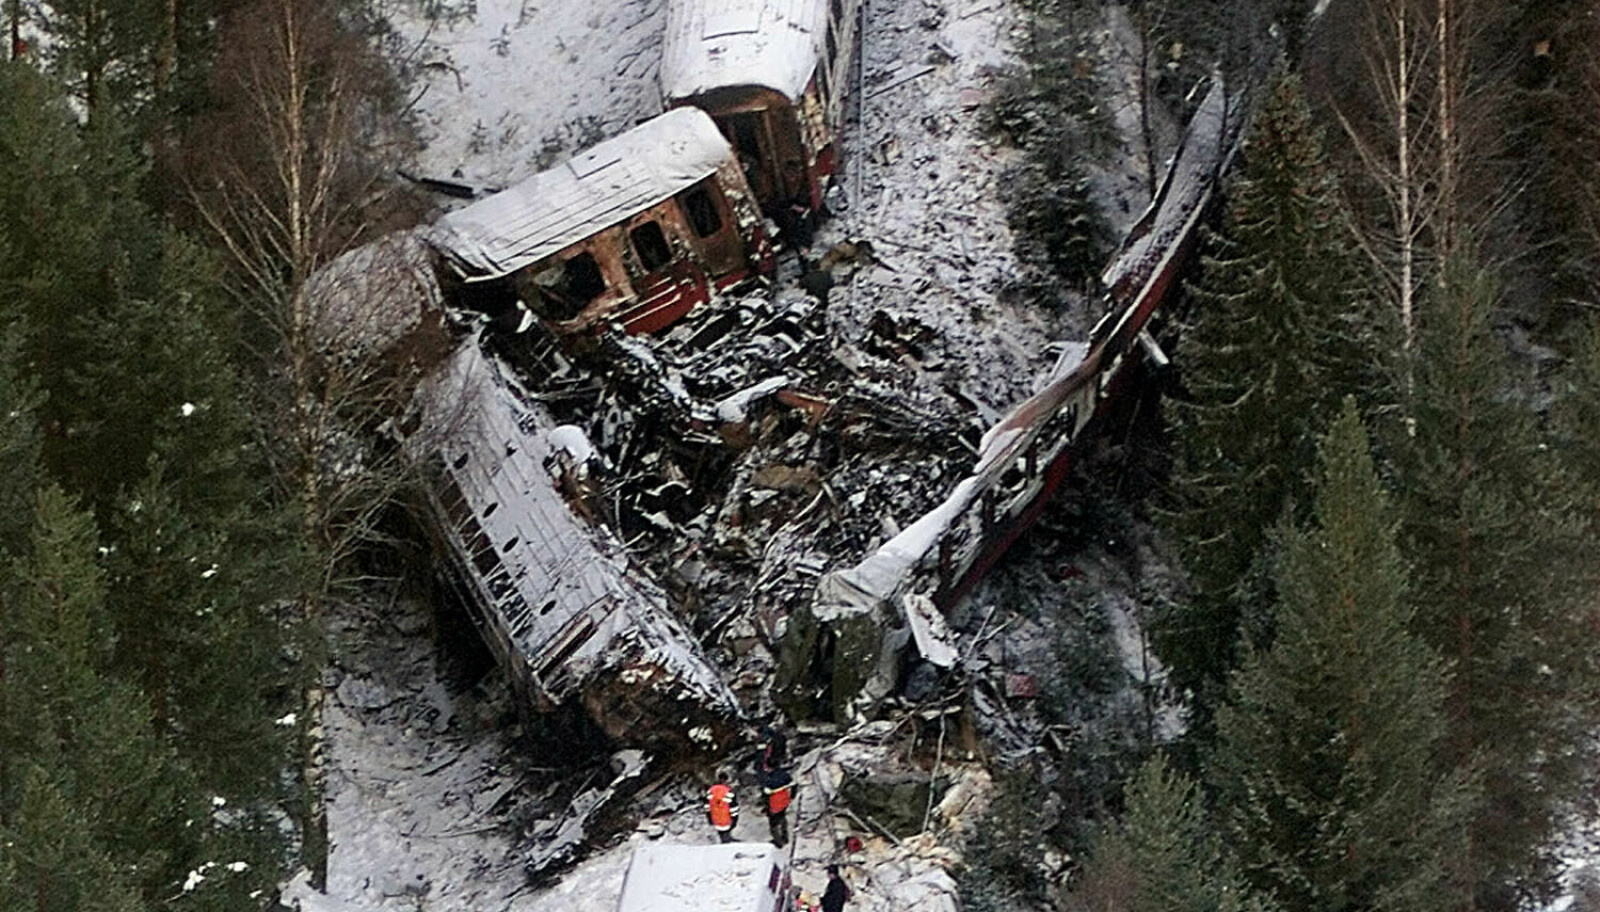 <b>JANUAR 2000:</b> Togulykke på Rørosbanen, 19 mennesker omkom. Foto: Terje Bendiksby, SCANPIX